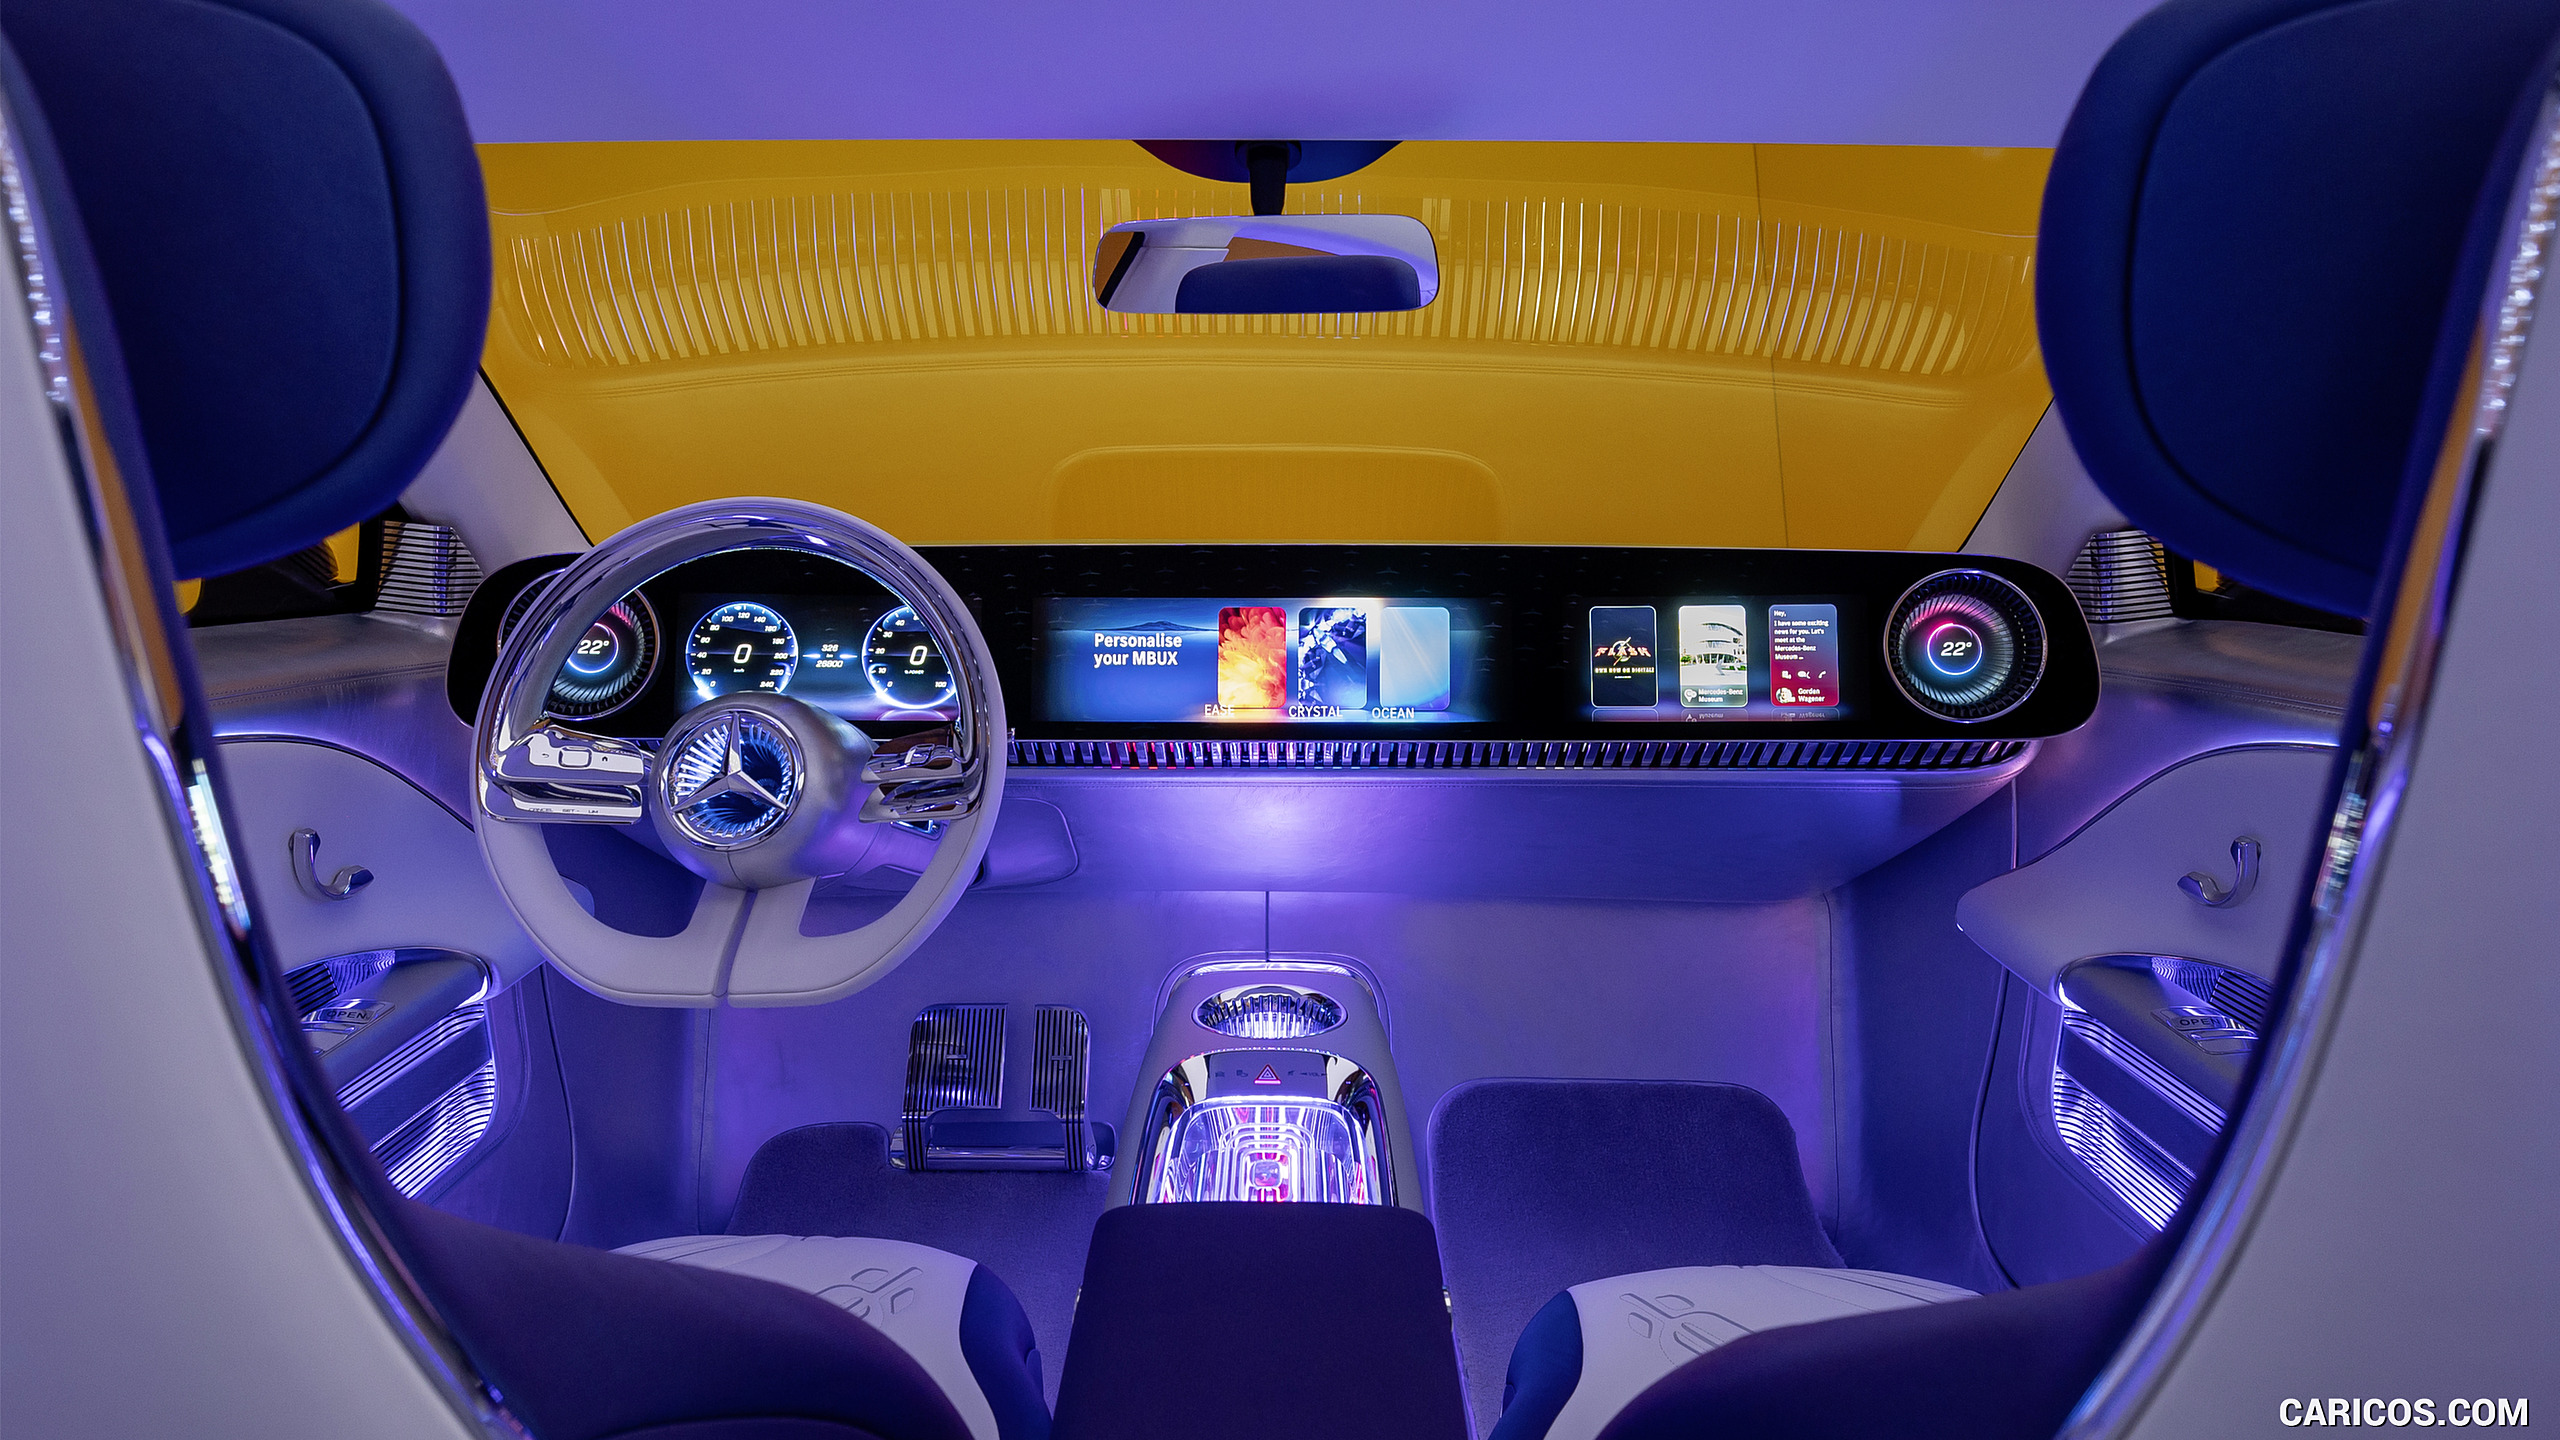 2023 MercedesBenz CLA Class Concept Interior Caricos